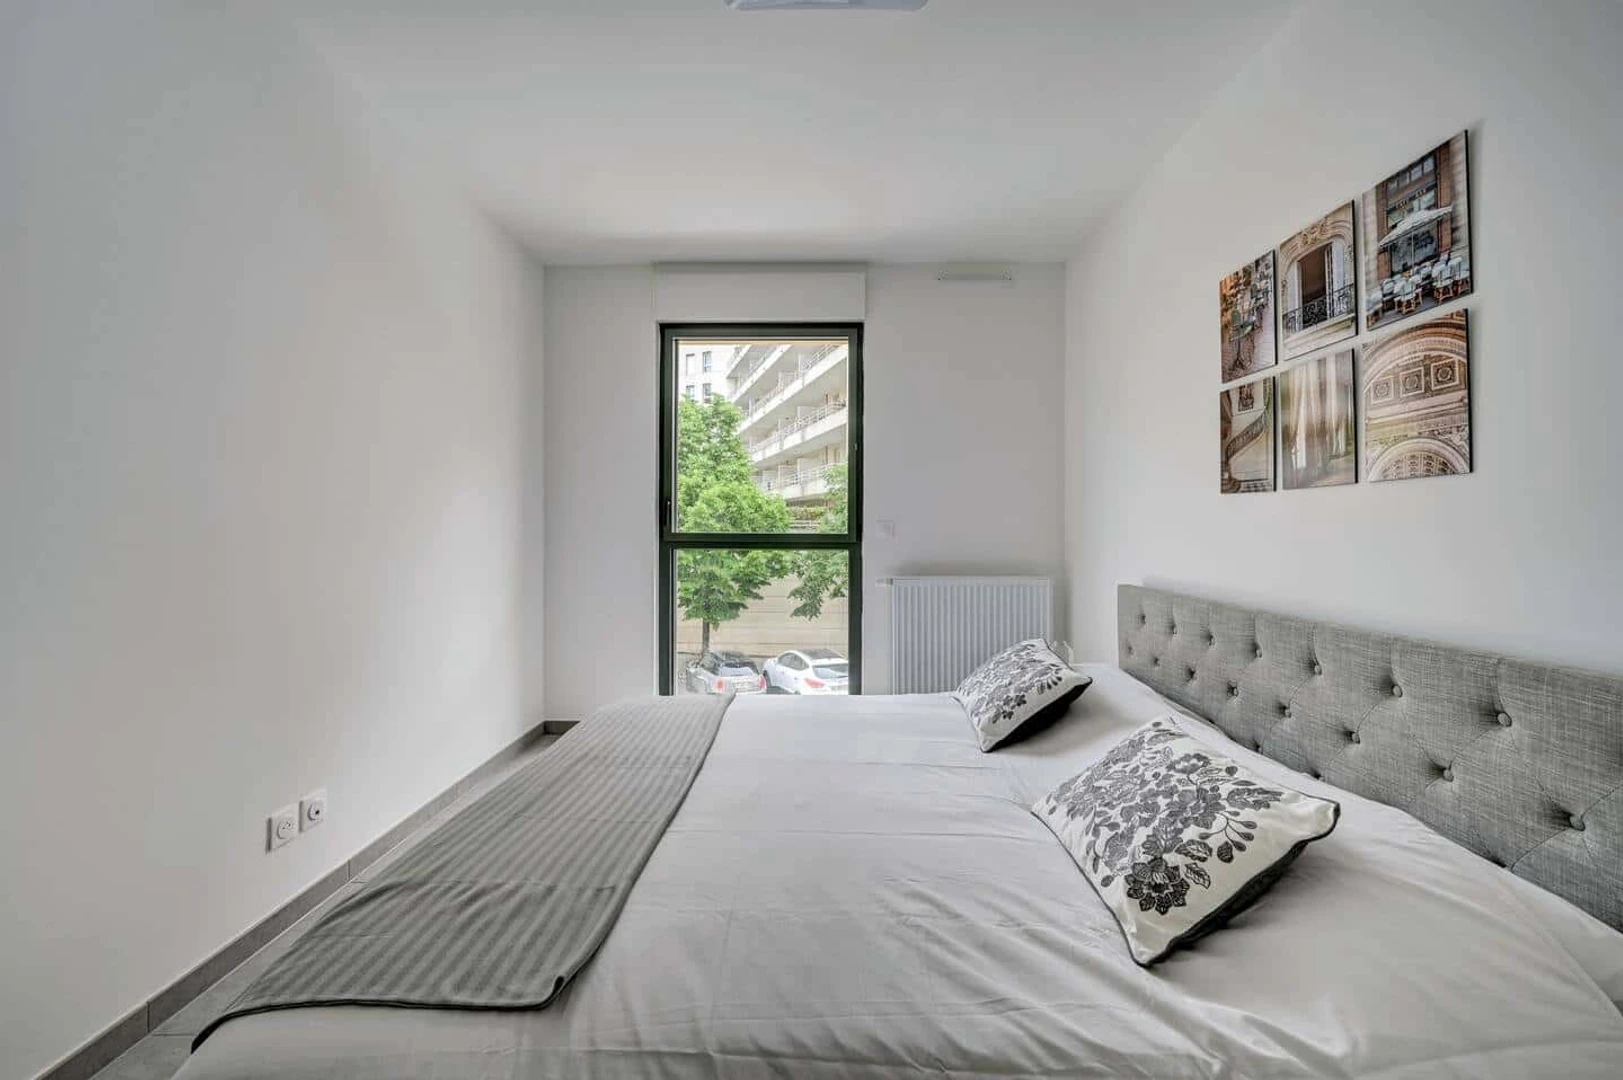 Aix-en-provence içinde 2 yatak odalı konaklama